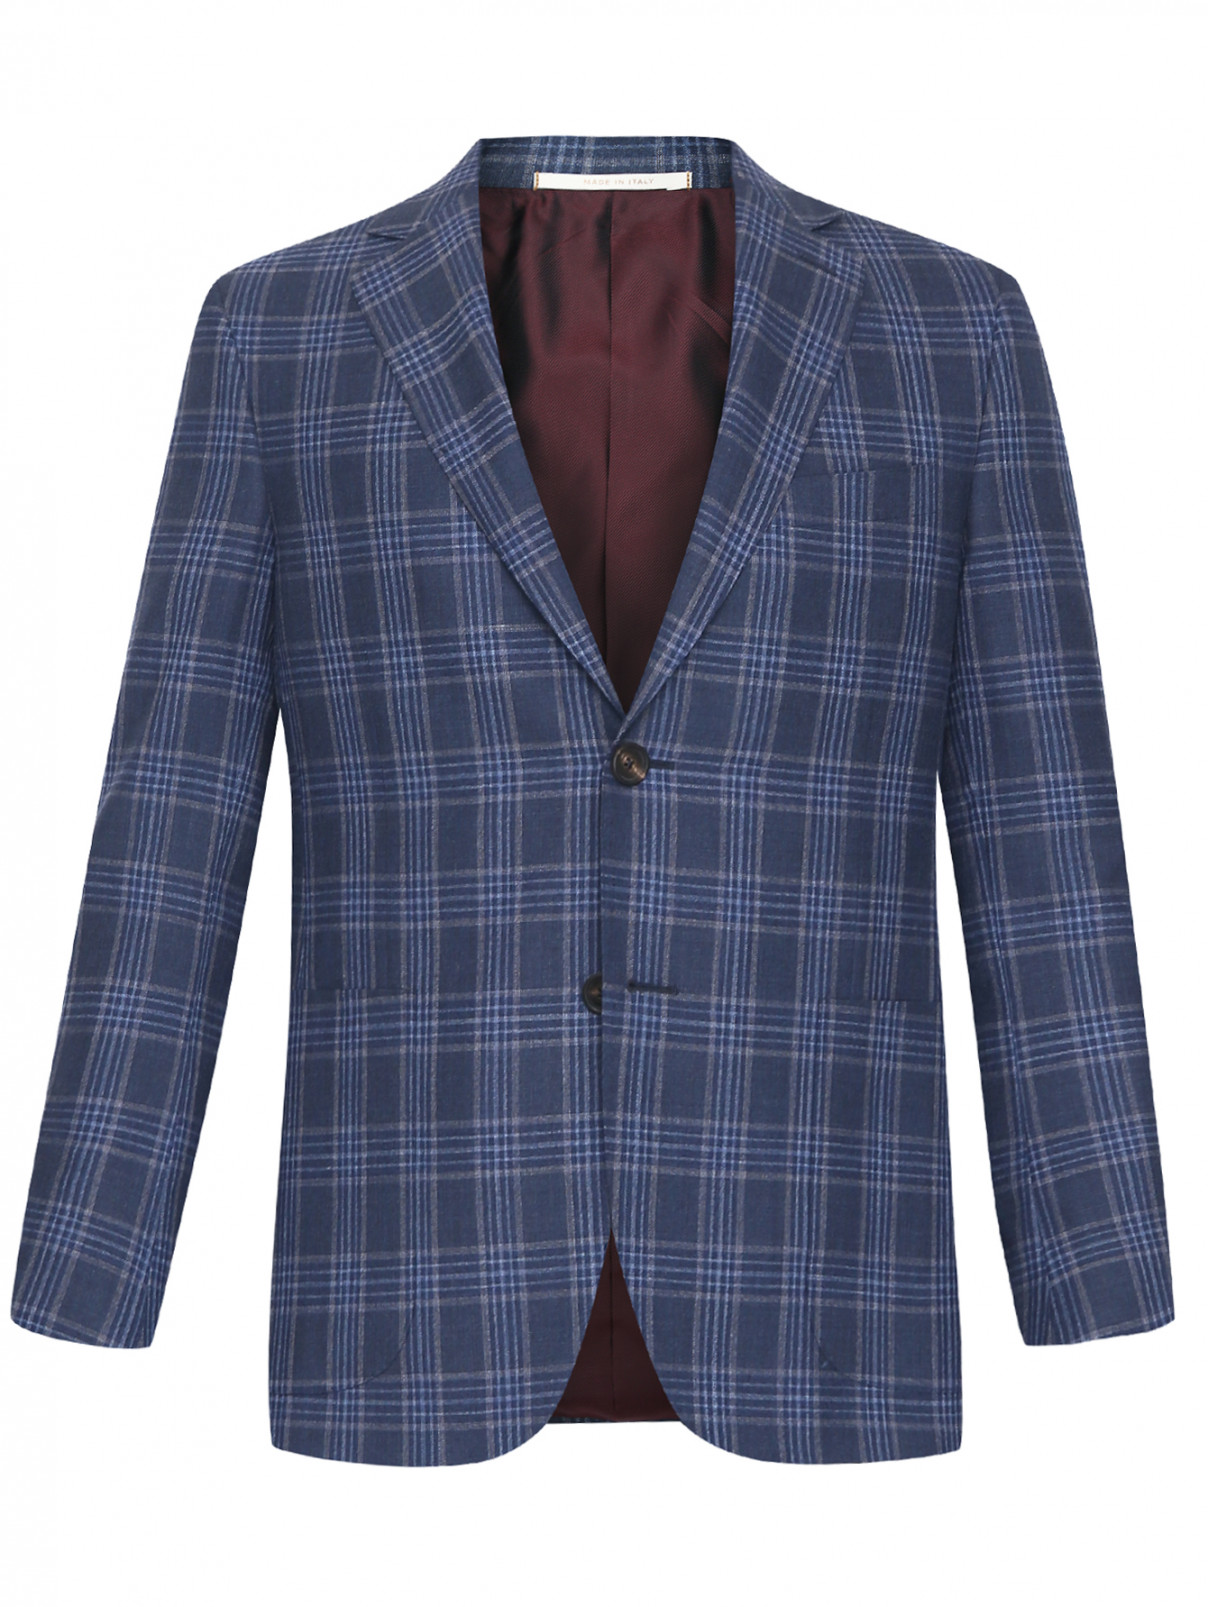 Пиджак из шерсти с узором Pal Zileri  –  Общий вид  – Цвет:  Синий